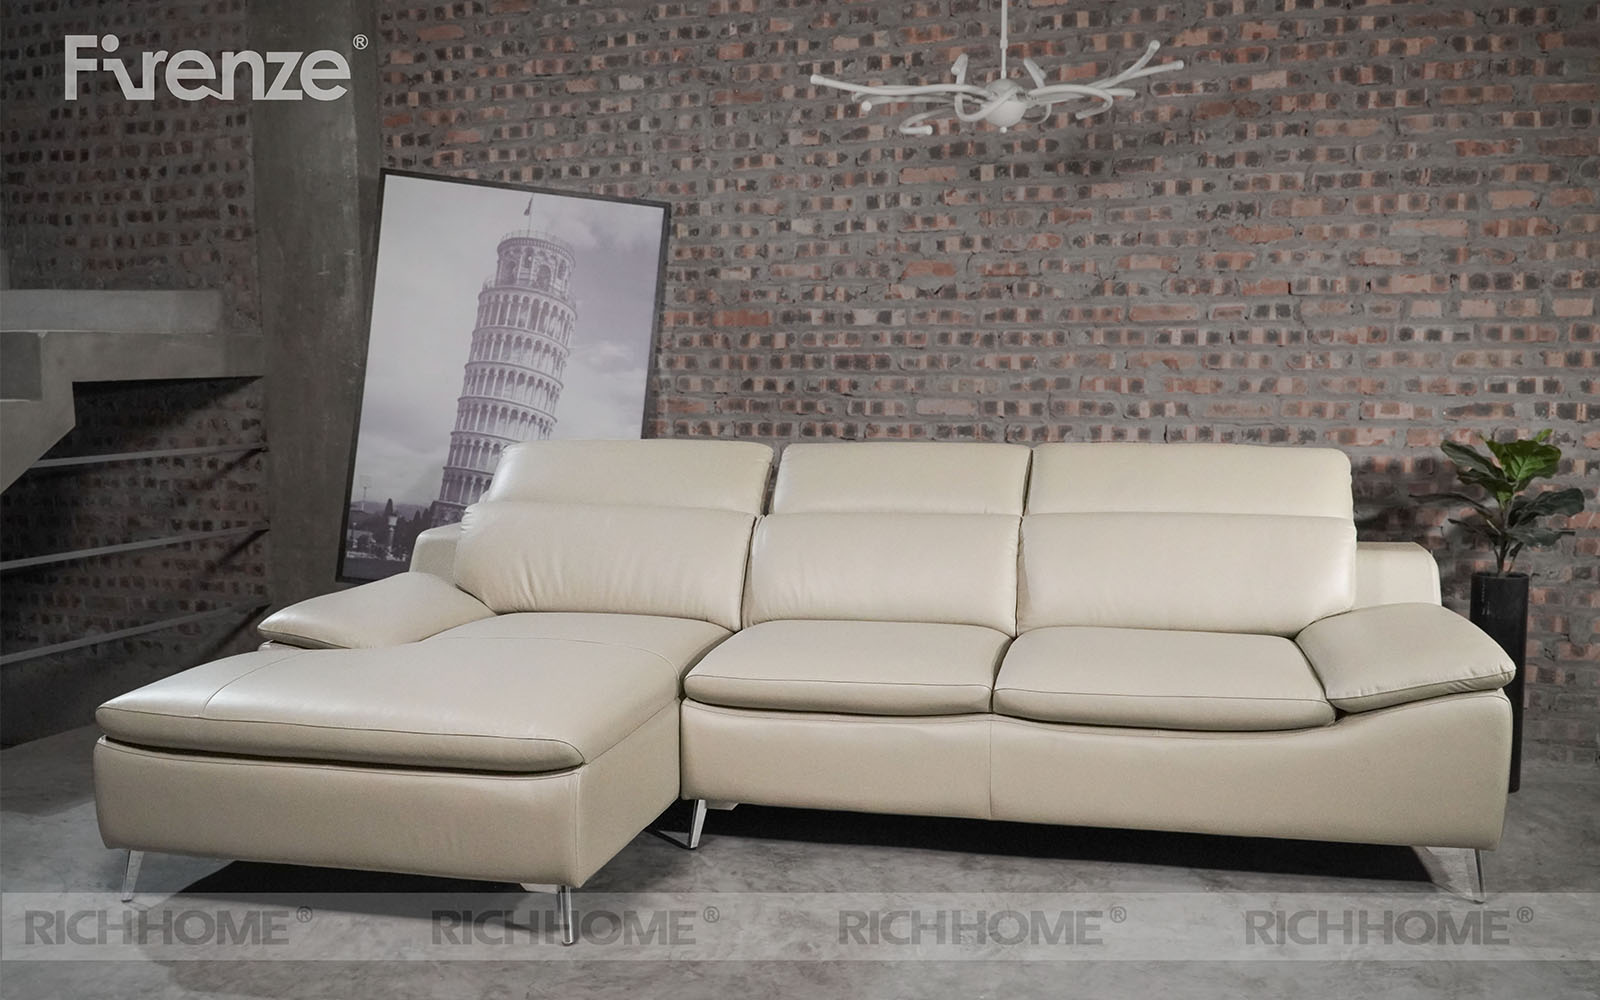 Cửa hàng bán ghế sofa nhập khẩu tại Hà Nội chính hãng - Ảnh 6